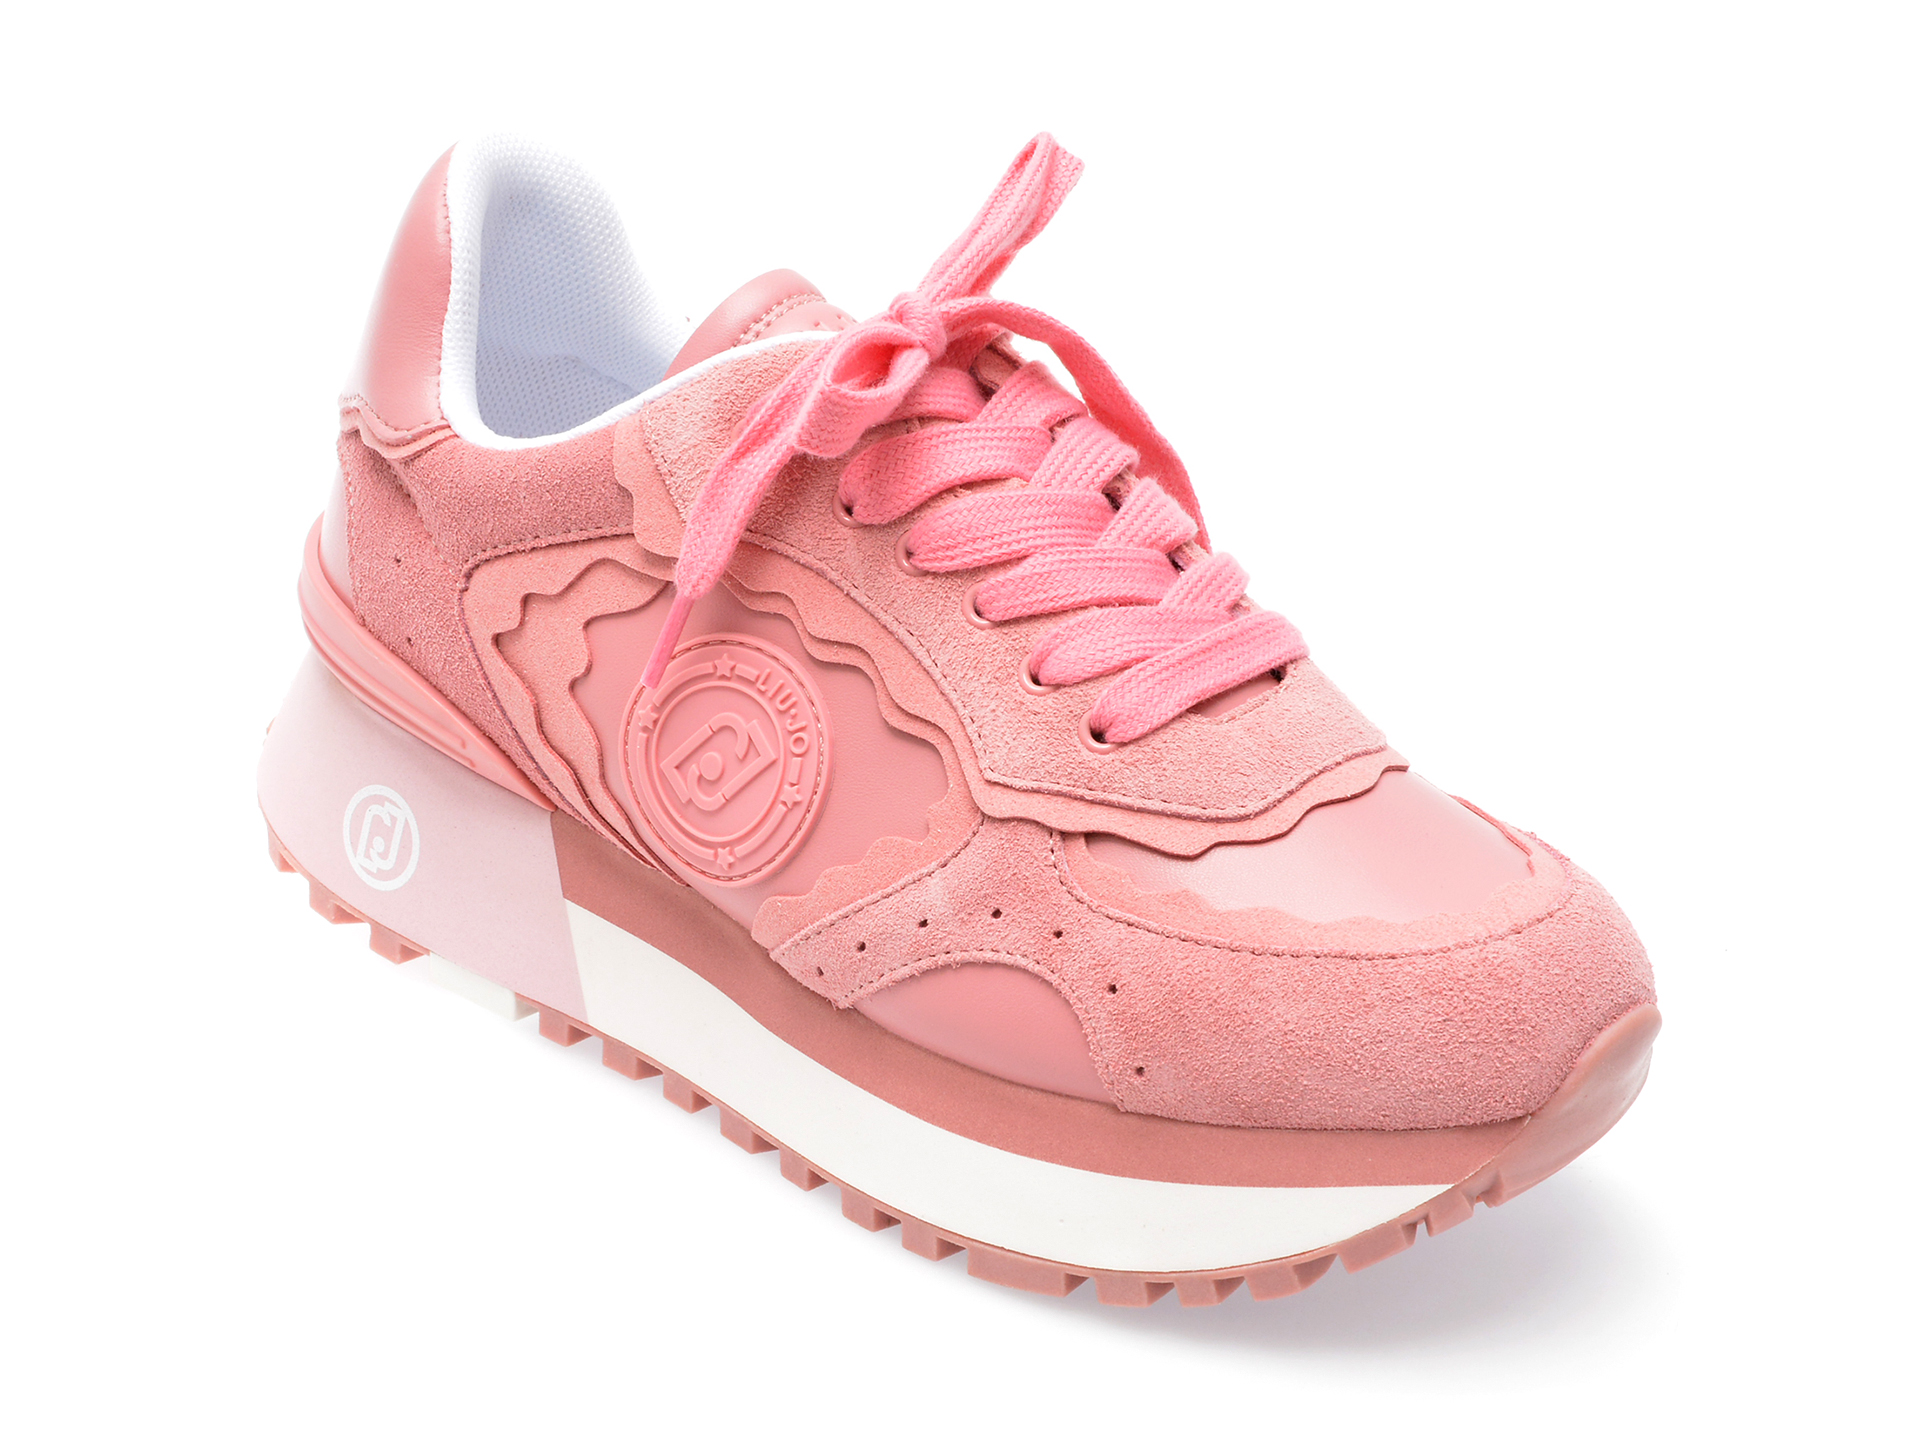 Pantofi LIU JO roz, MAXWO60, din piele ecologica Answear 2023-05-31